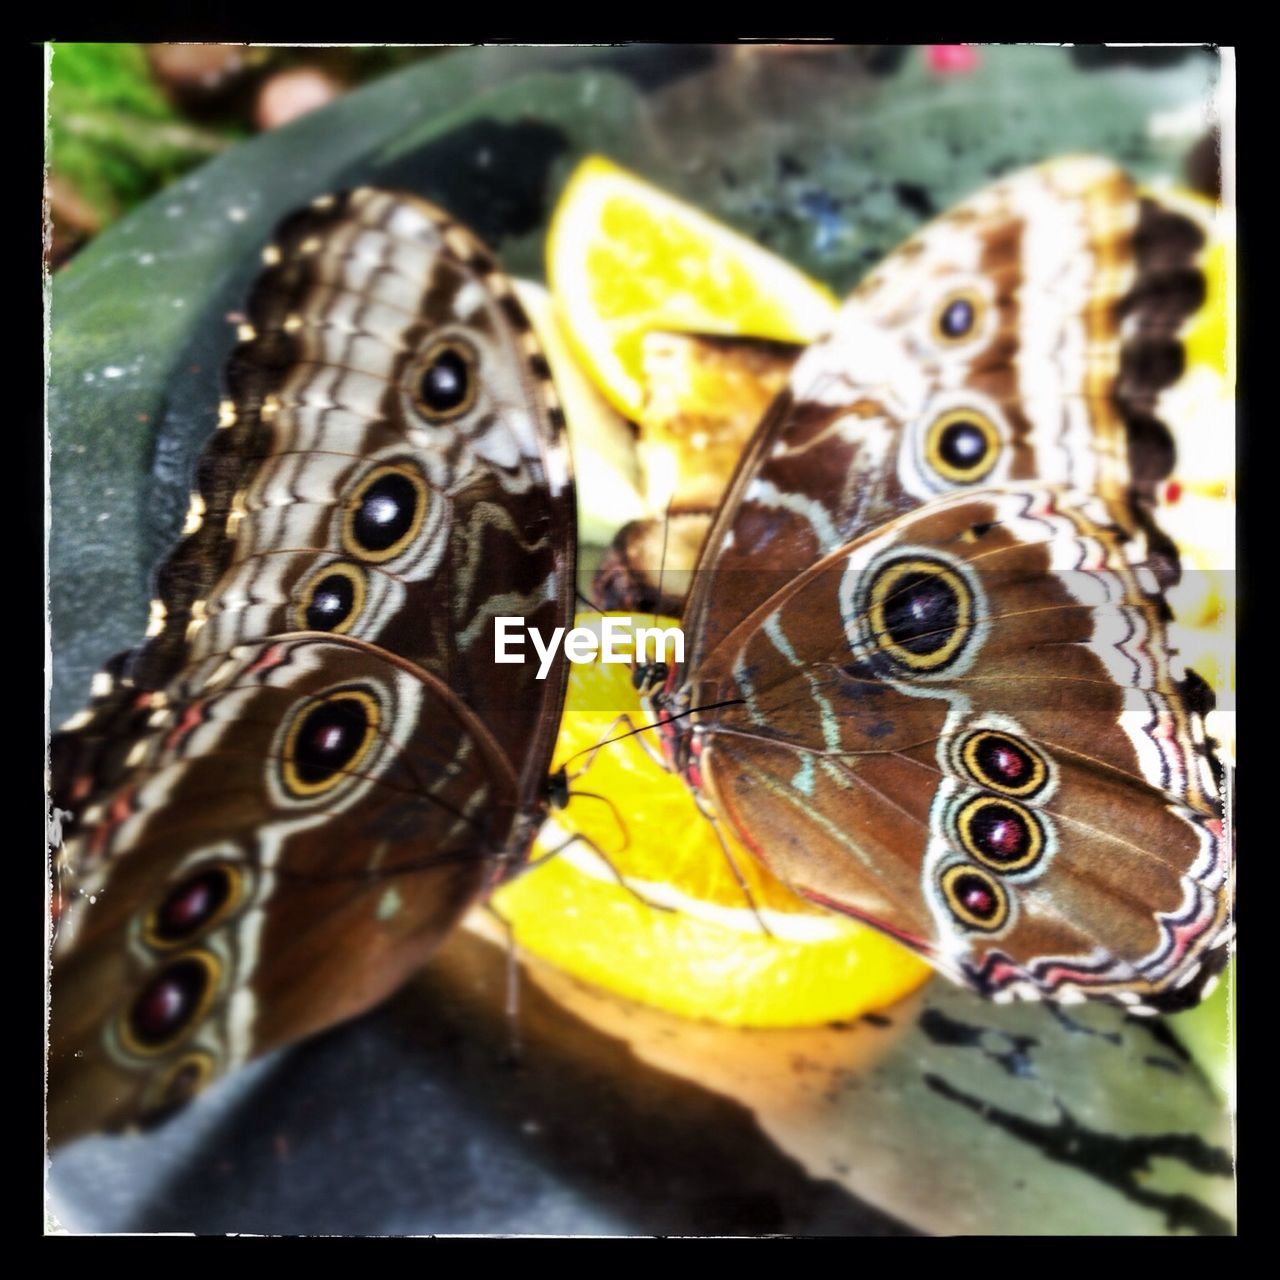 Two butterflies feeding on lemon